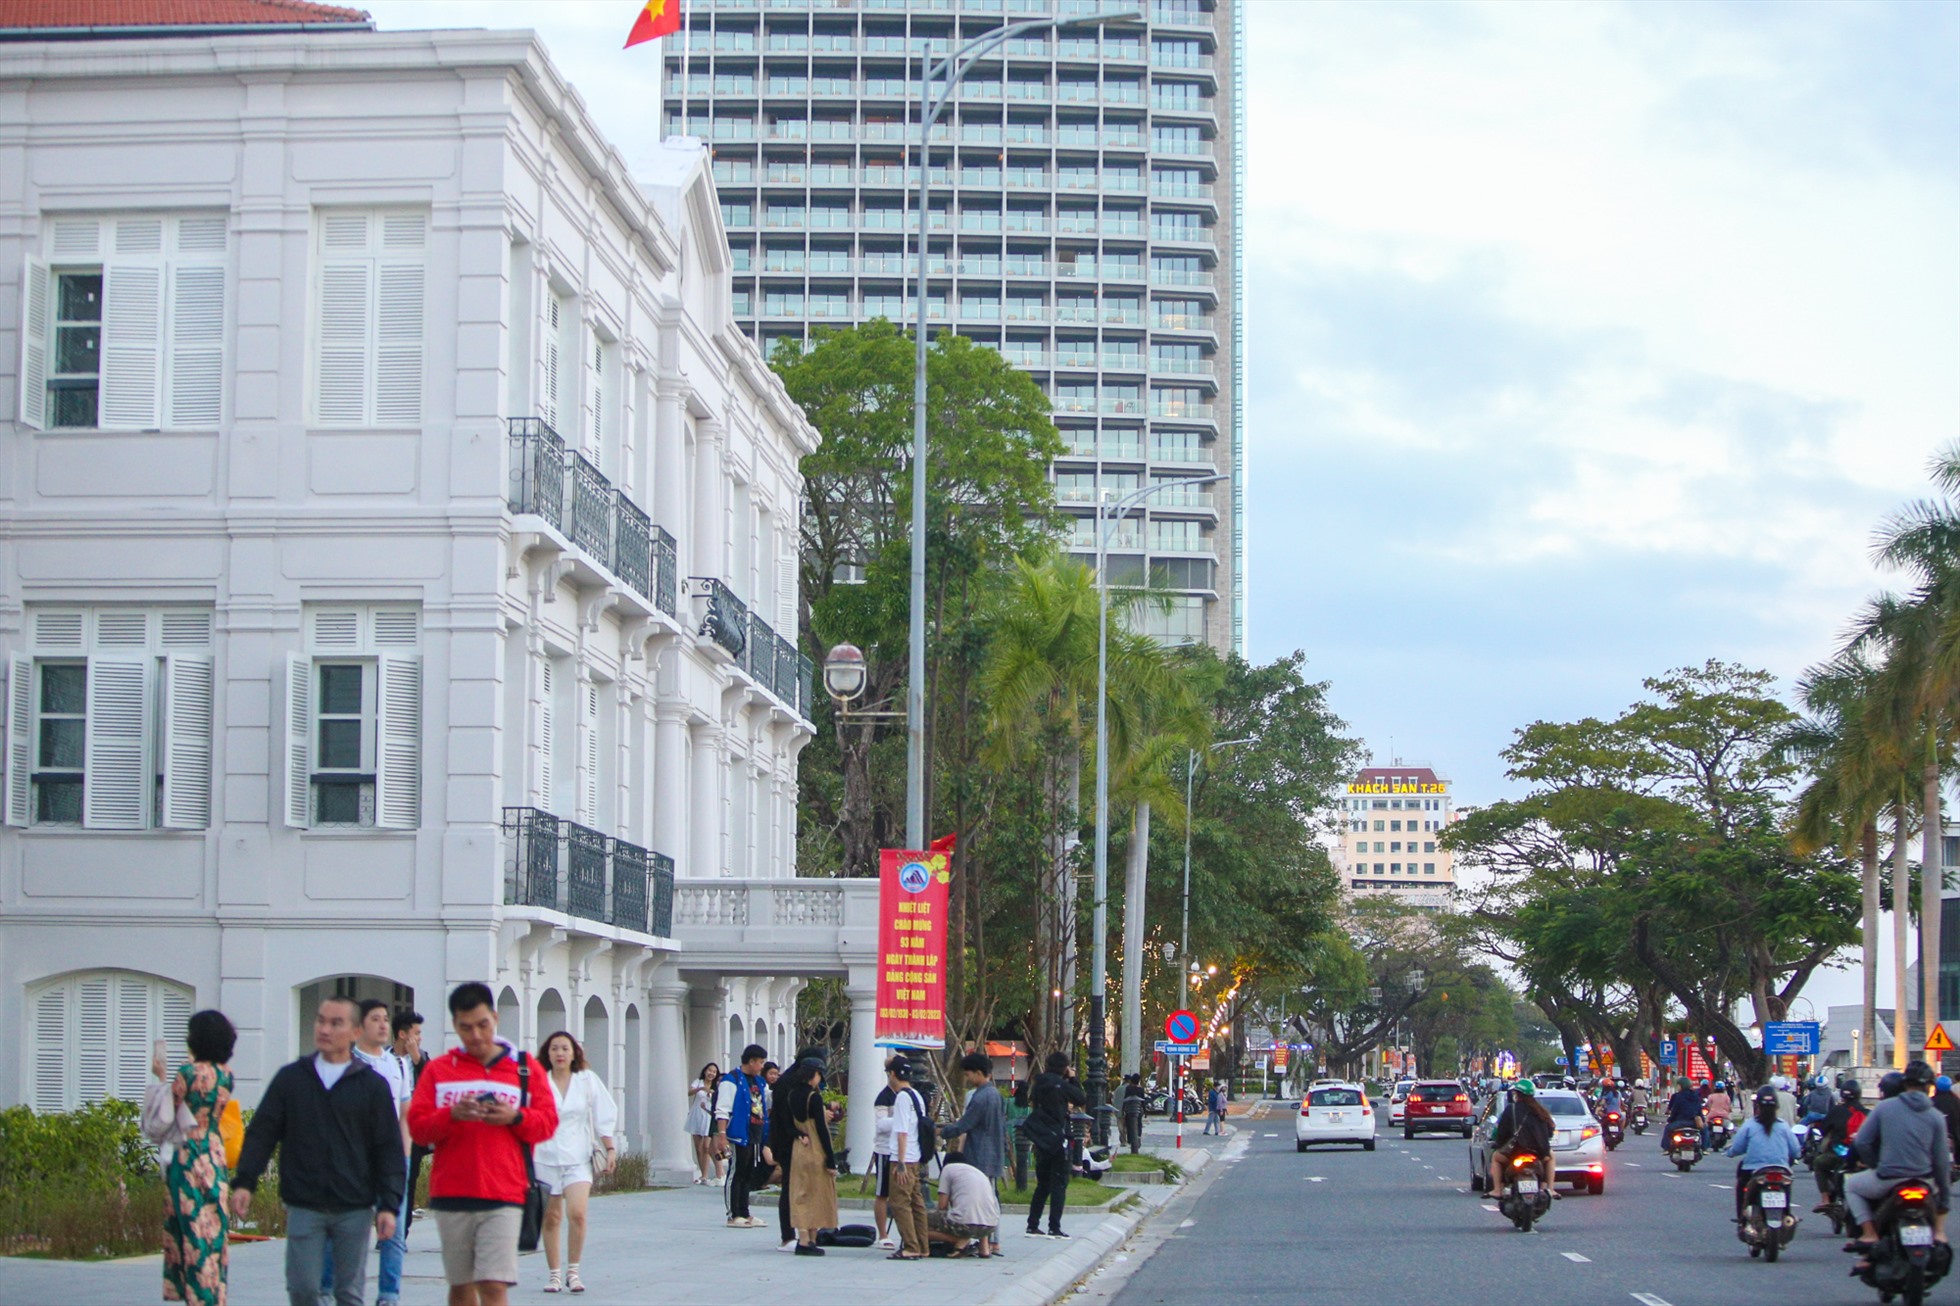 Mới lối kiến trúc đẹp mắt, Bảo tàng Đà Nẵng sau khi hoàn thiện dự kiến sẽ trở thành nơi tham quan lý thú của người dân và du khách khi đến với Đà Nẵng.